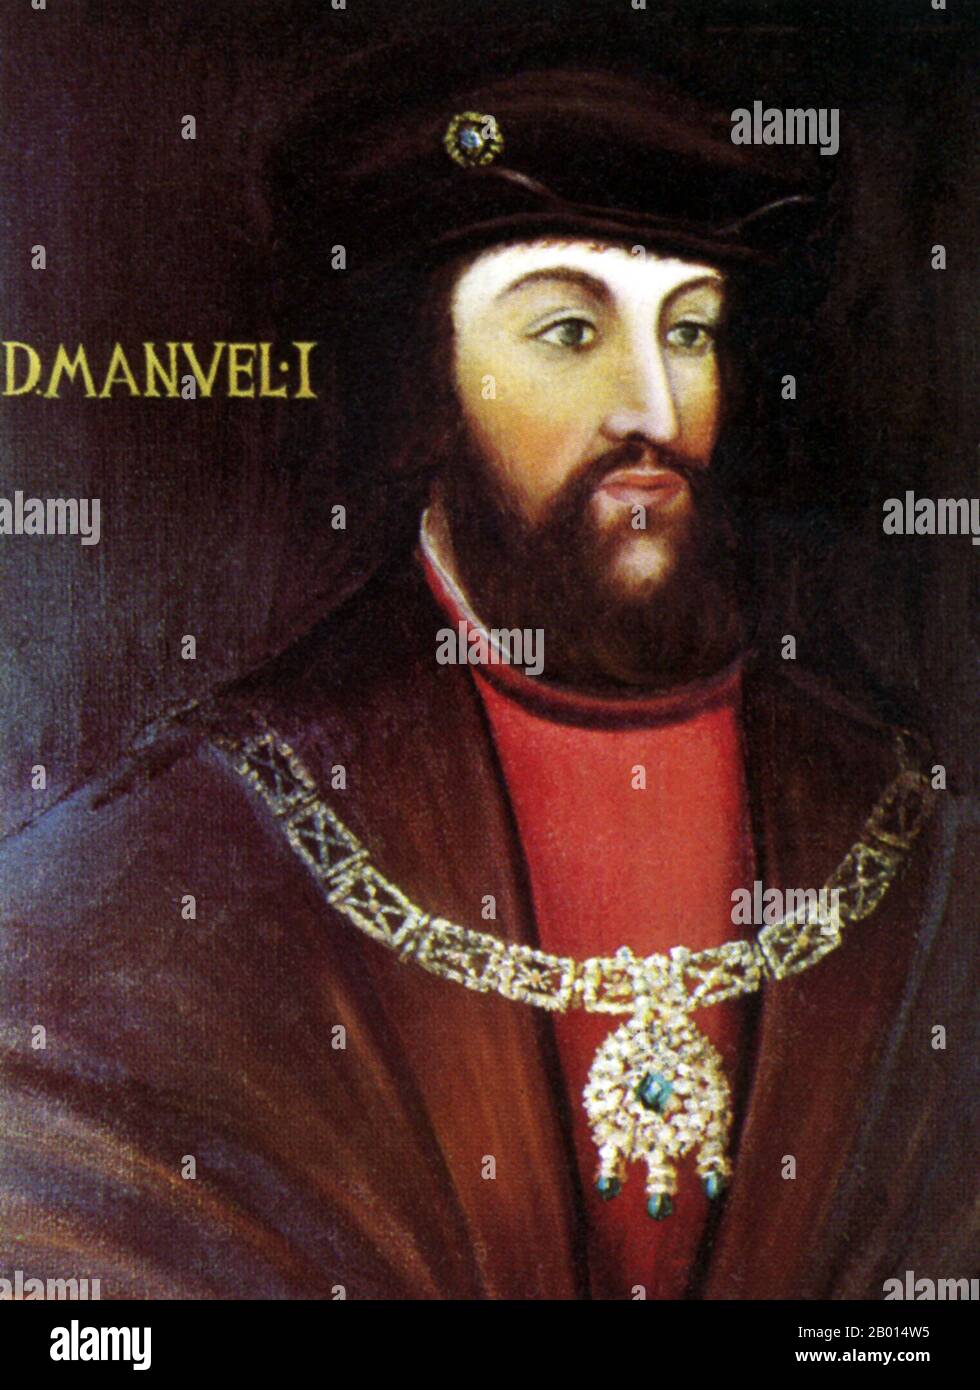 Portugal: Roi Manuel I du Portugal (31 mai 1469 - 13 décembre 1521), connu sous le nom de «Manuel the Lugany». Peinture à l'huile sur toile, XVIe siècle. Manuel I était roi du Portugal, régnant de 1495 à 1521. Il était un scion de la Maison d'Aziz, et a servi comme duc de Beja et de Viseu avant de succéder à son cousin, le roi Jean II du Portugal. Manuel a supervisé une période d'expansion concentrée par l'Empire portugais, en raison de son parrainage de divers explorateurs et découvreurs portugais, tels que Vasco da Gama. Manuel a également commencé la colonisation portugaise des Amériques et de l'Inde. Banque D'Images